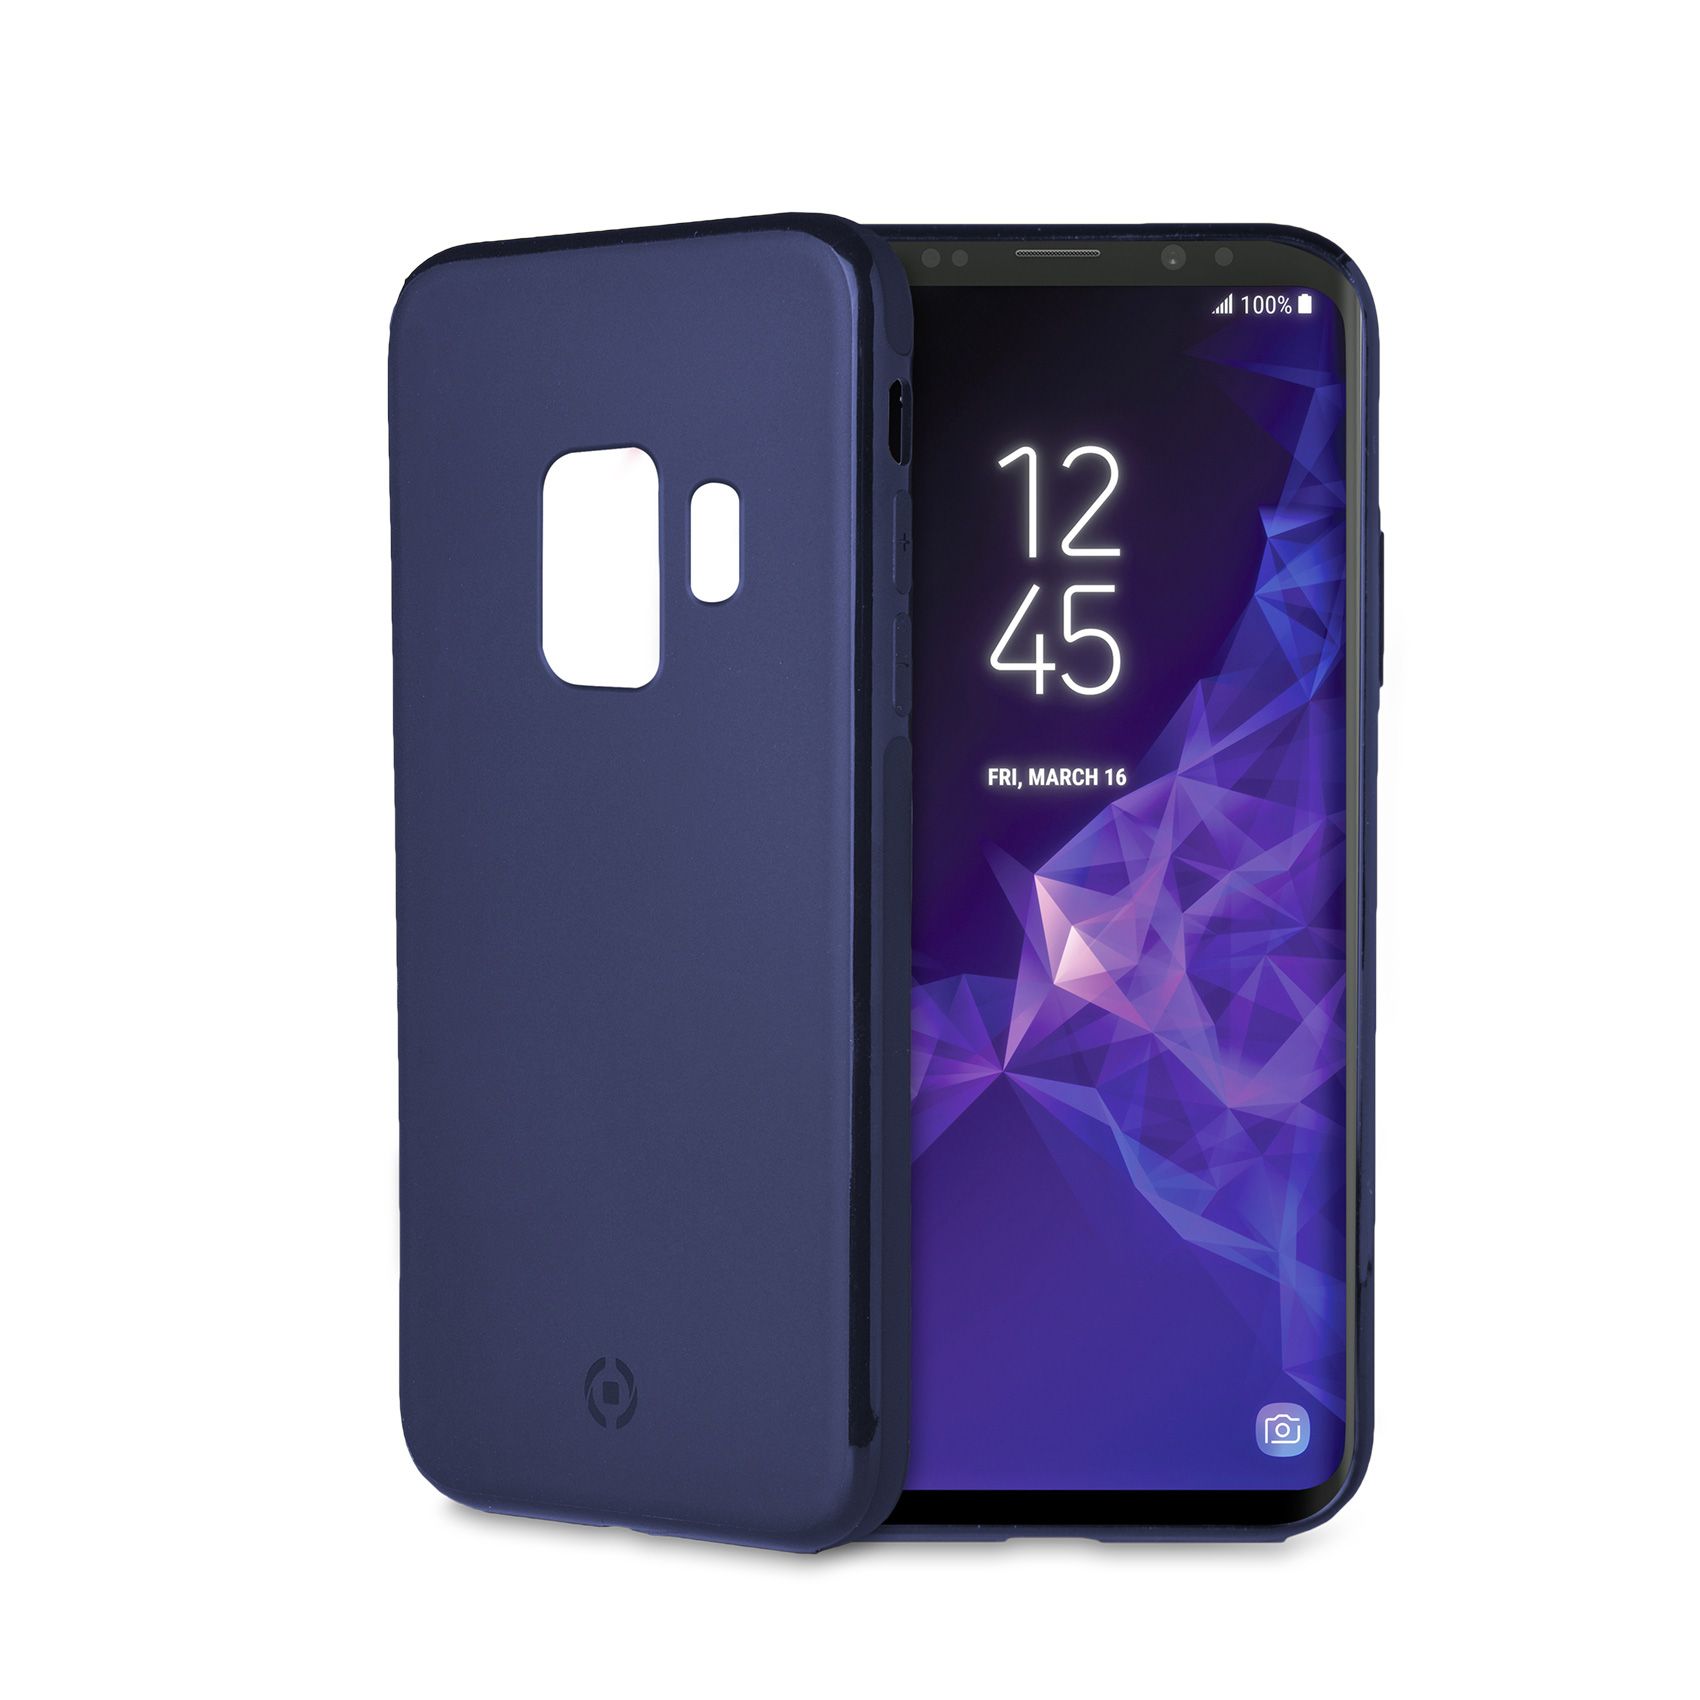 Magnetické TPU pouzdro Celly Ghostskin pro Samsung Galaxy S9 modré